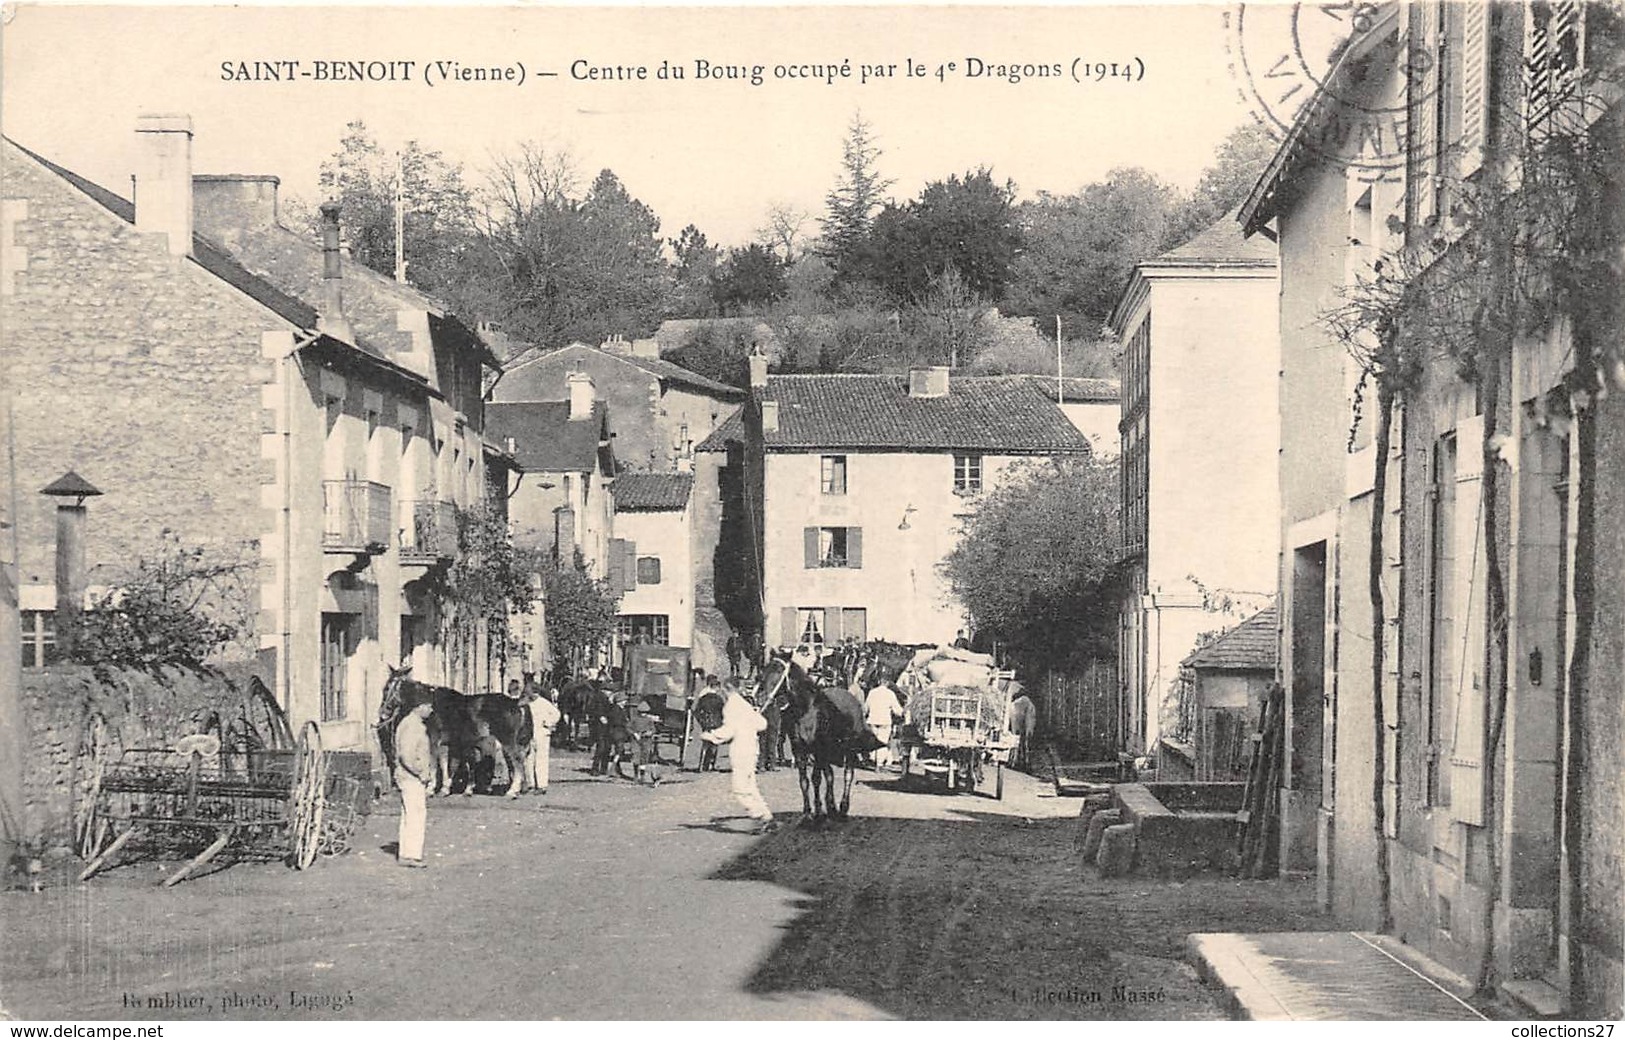 86-SAINT-BENOIT- CENTRE DU BOURG OCCUPE PAR LE 4e DRAGON 1914 - Saint Benoît